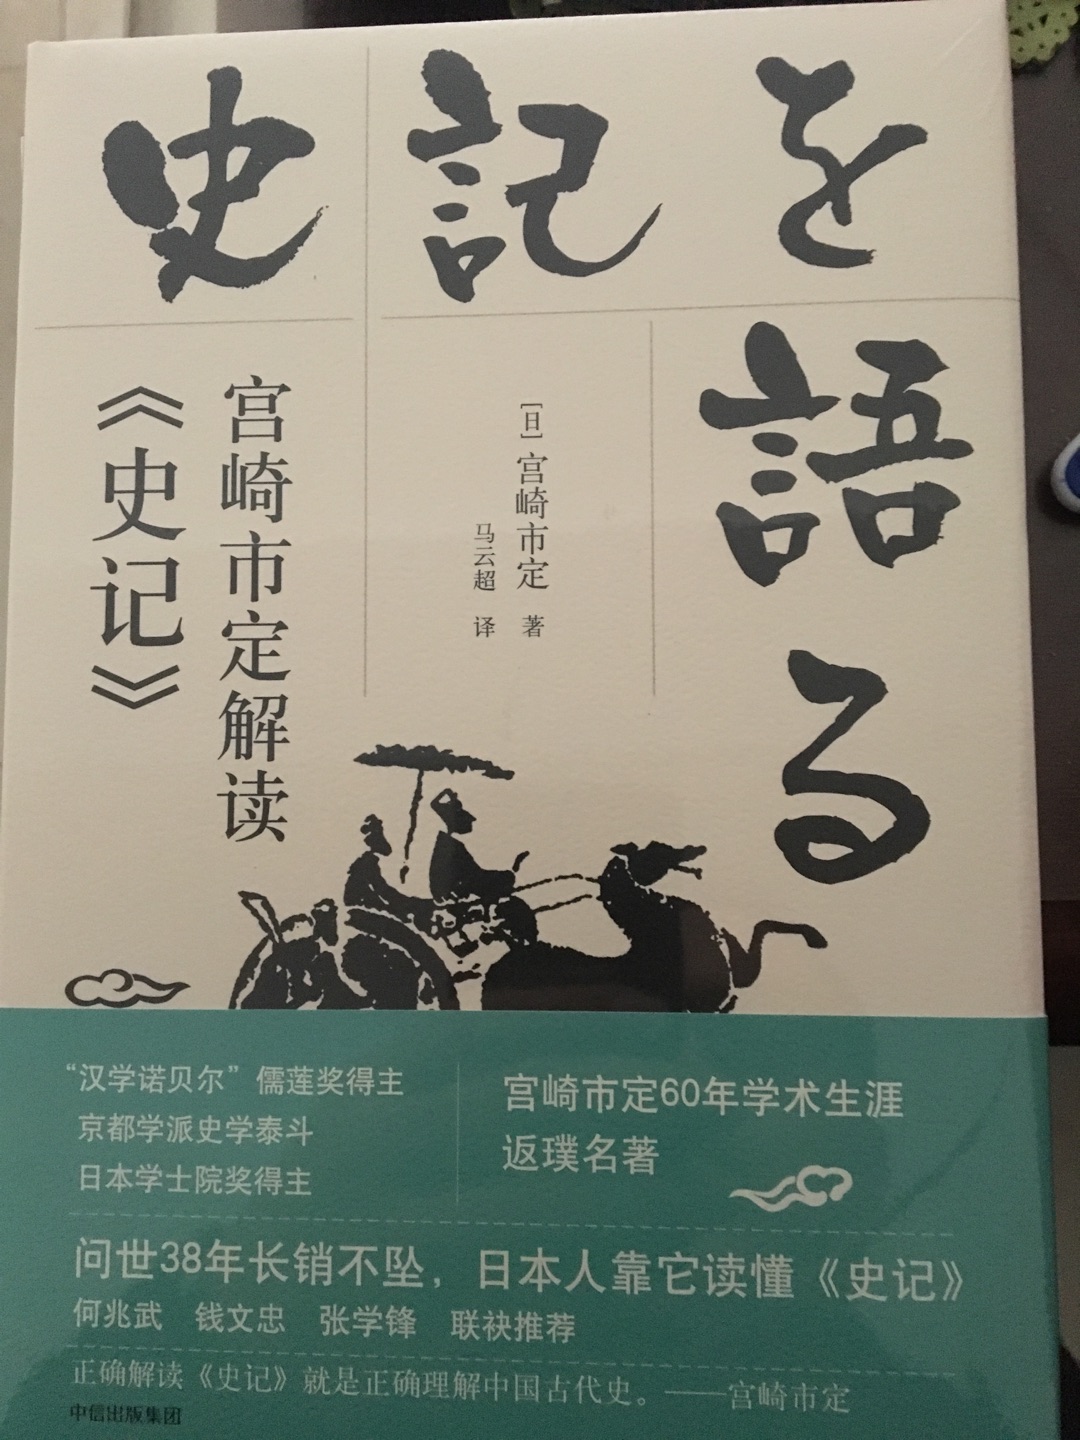 京都大学东亚史第二代传人的作品，东方史学起源的他人之眼